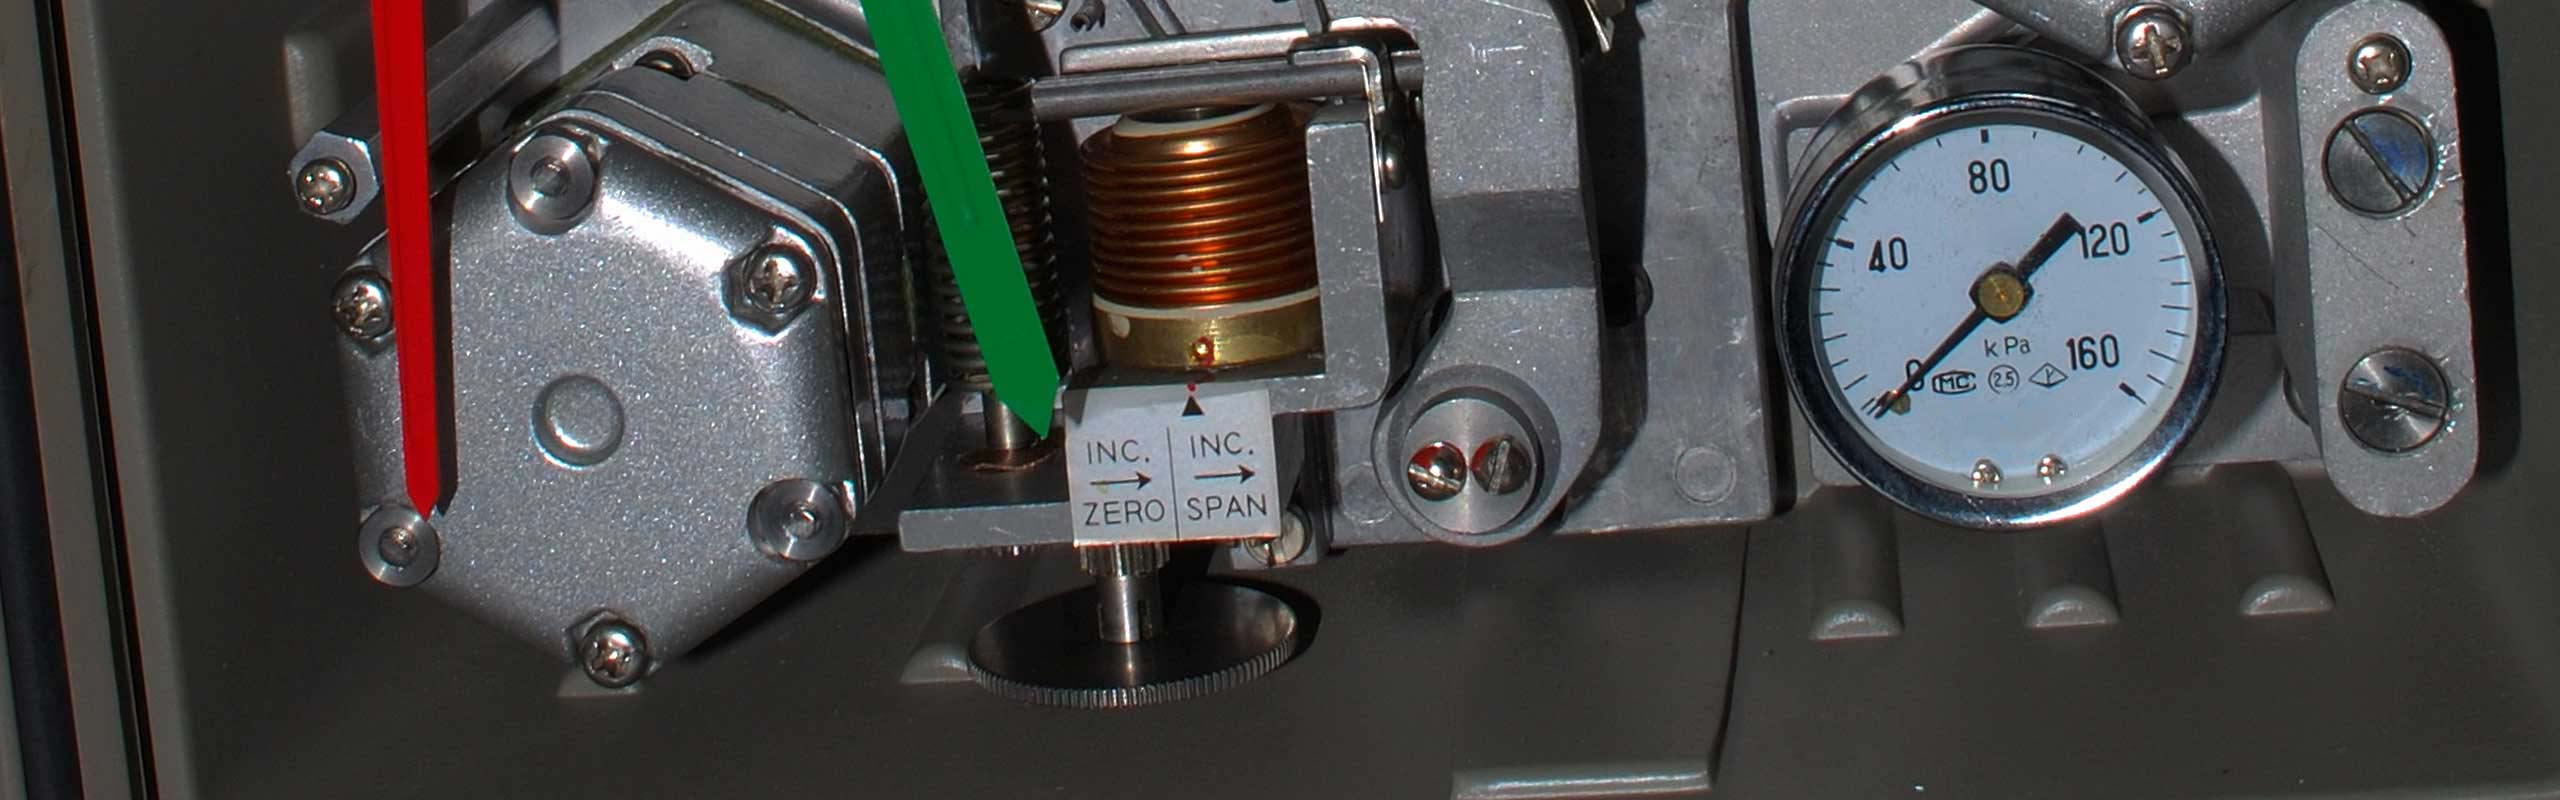 KDP 33 (Low Differential Pressure) Pneumatic Pressure Transmitter